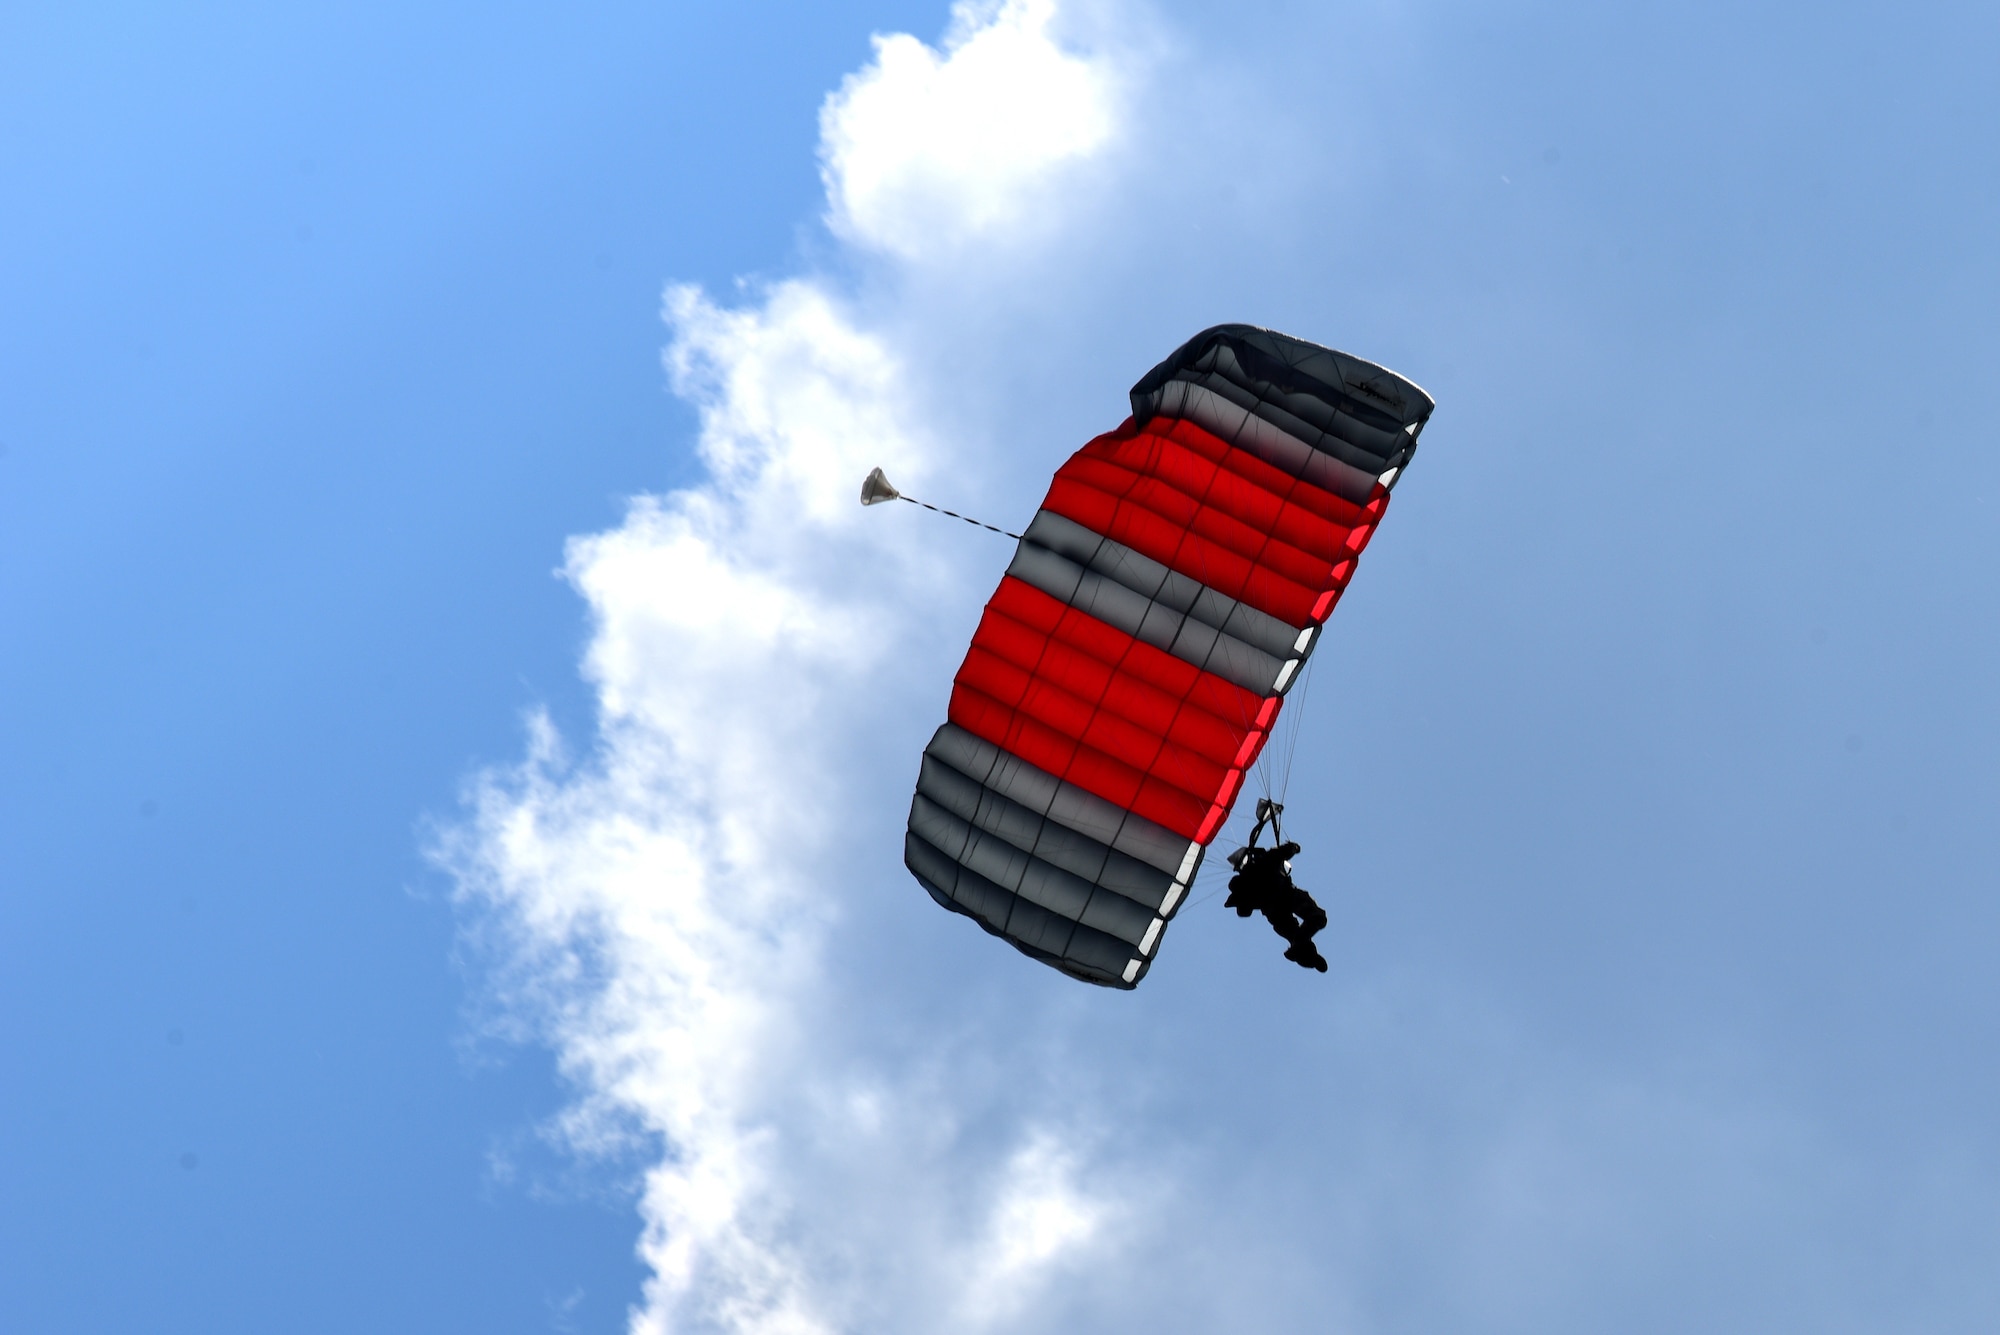 An Airman parachutes onto the airfield